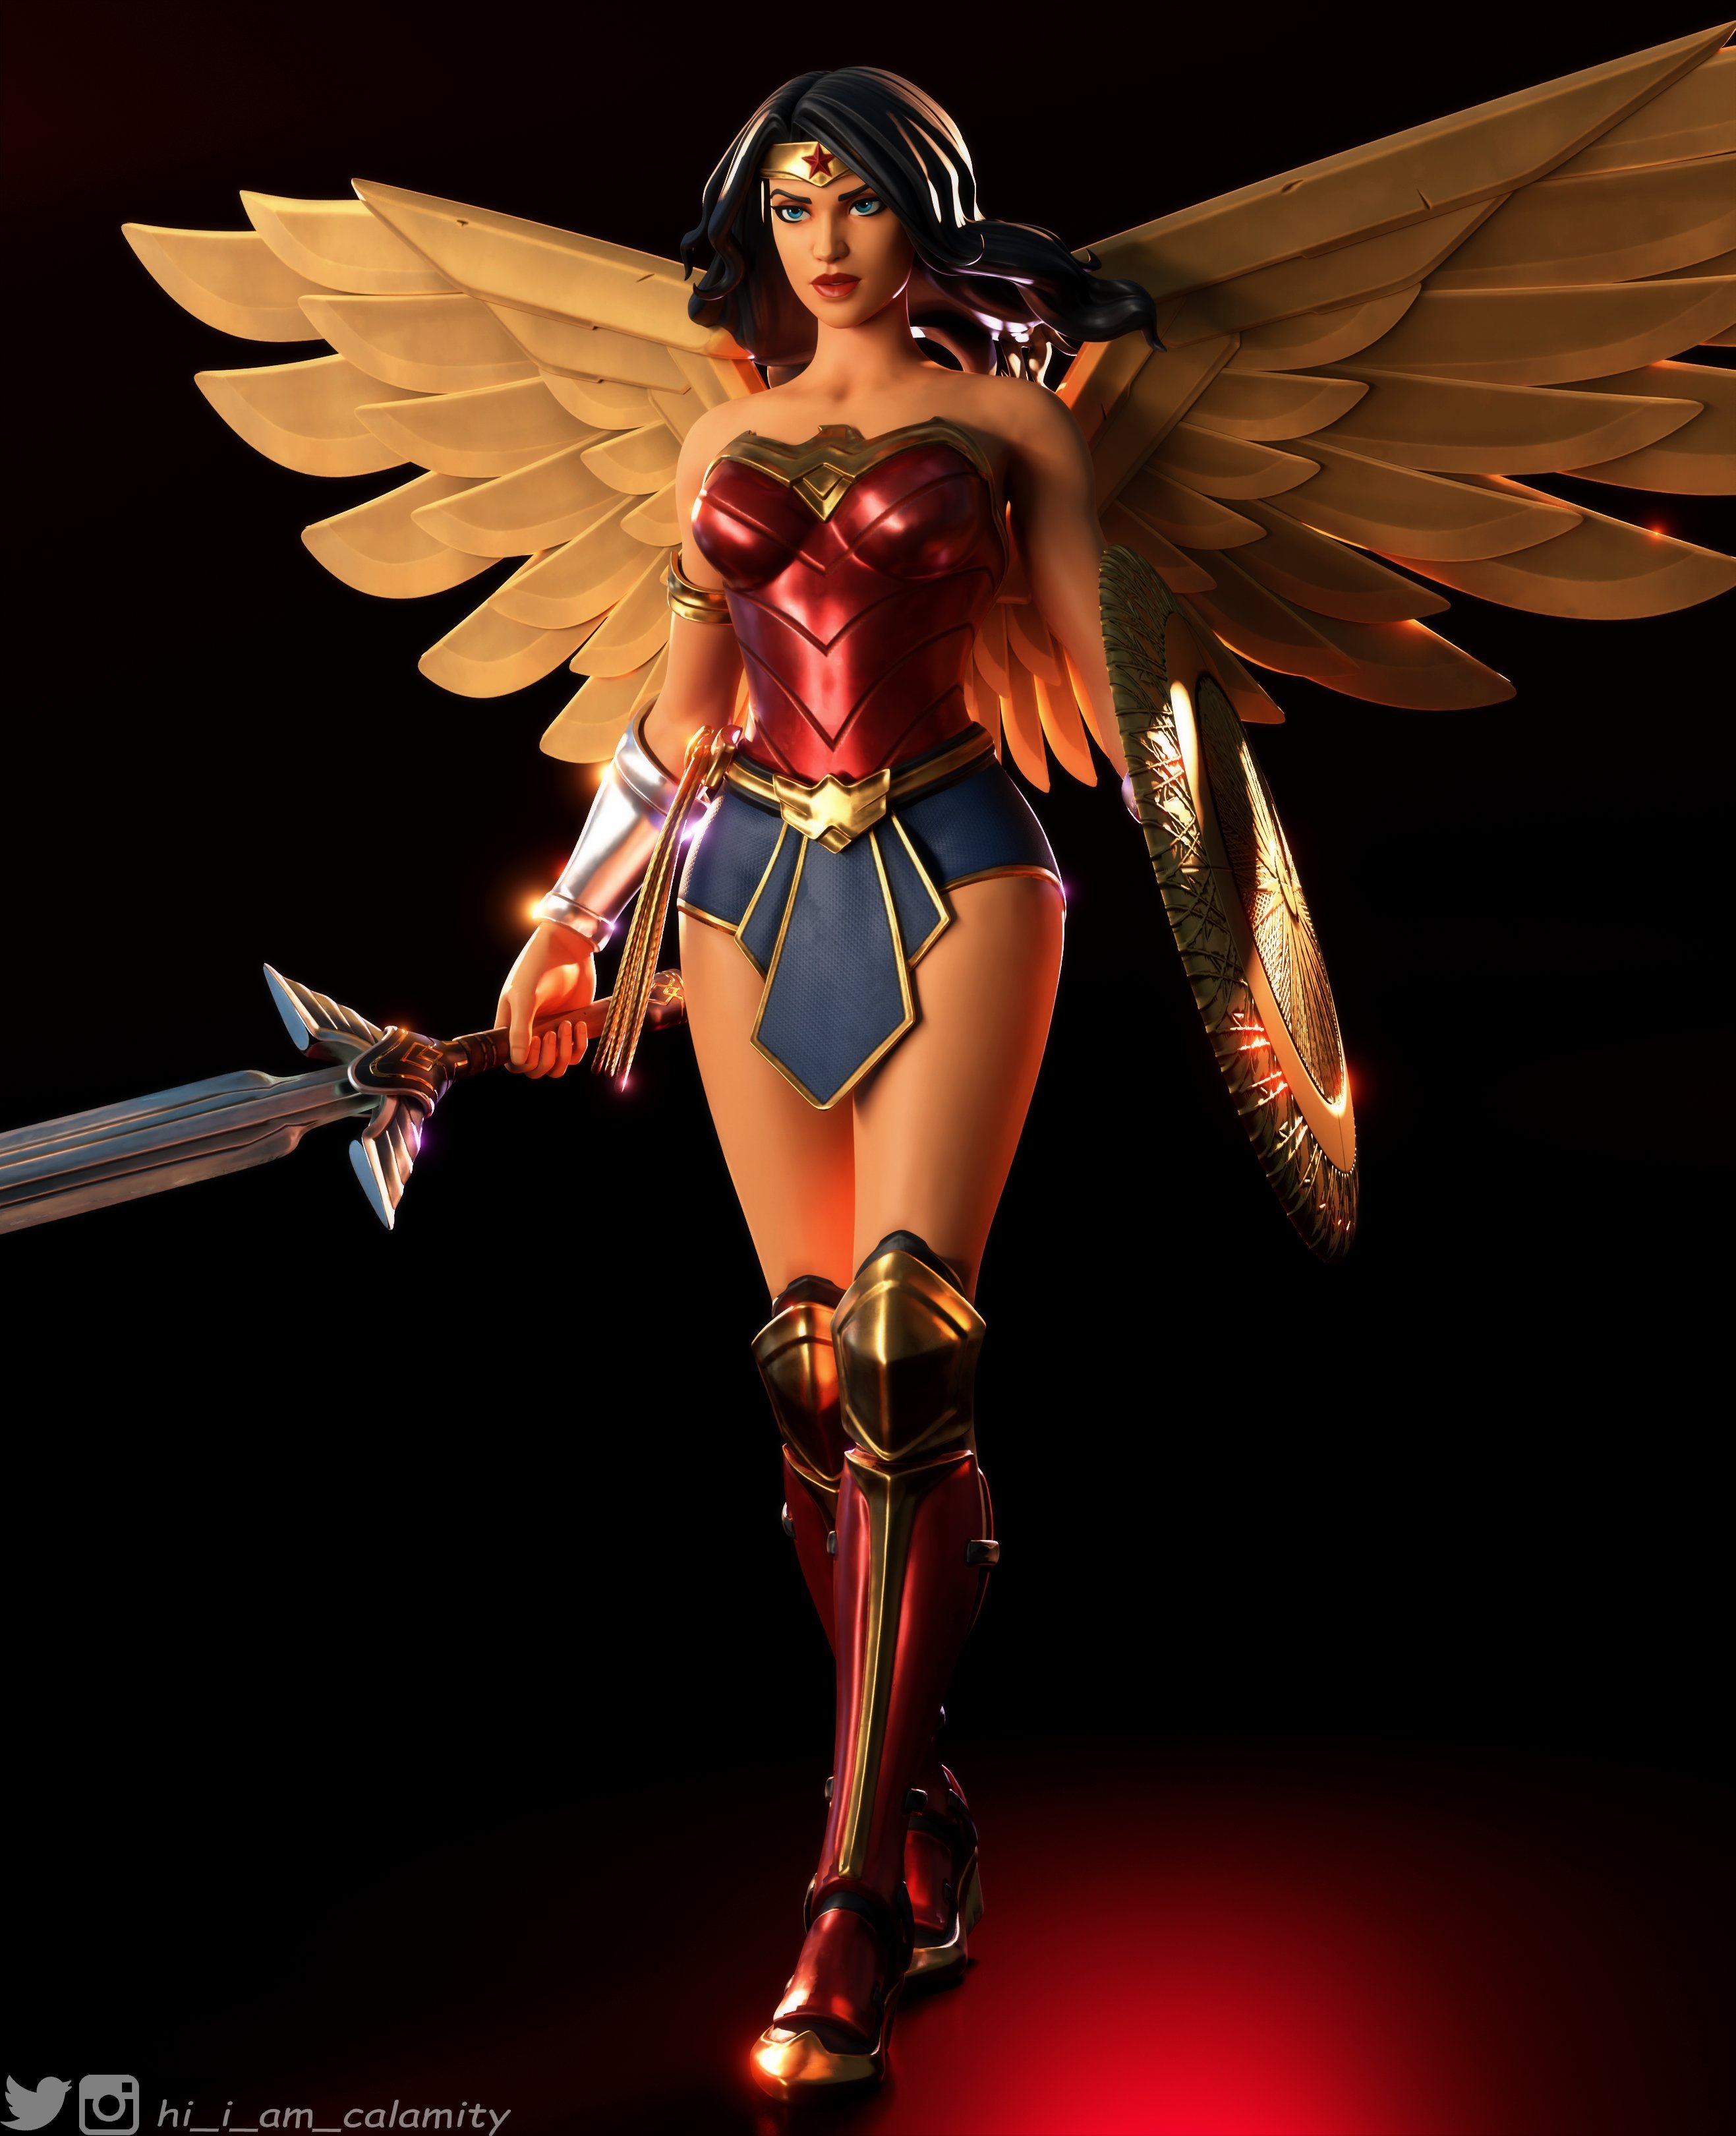 Wonder Woman Fortnite wallpaper